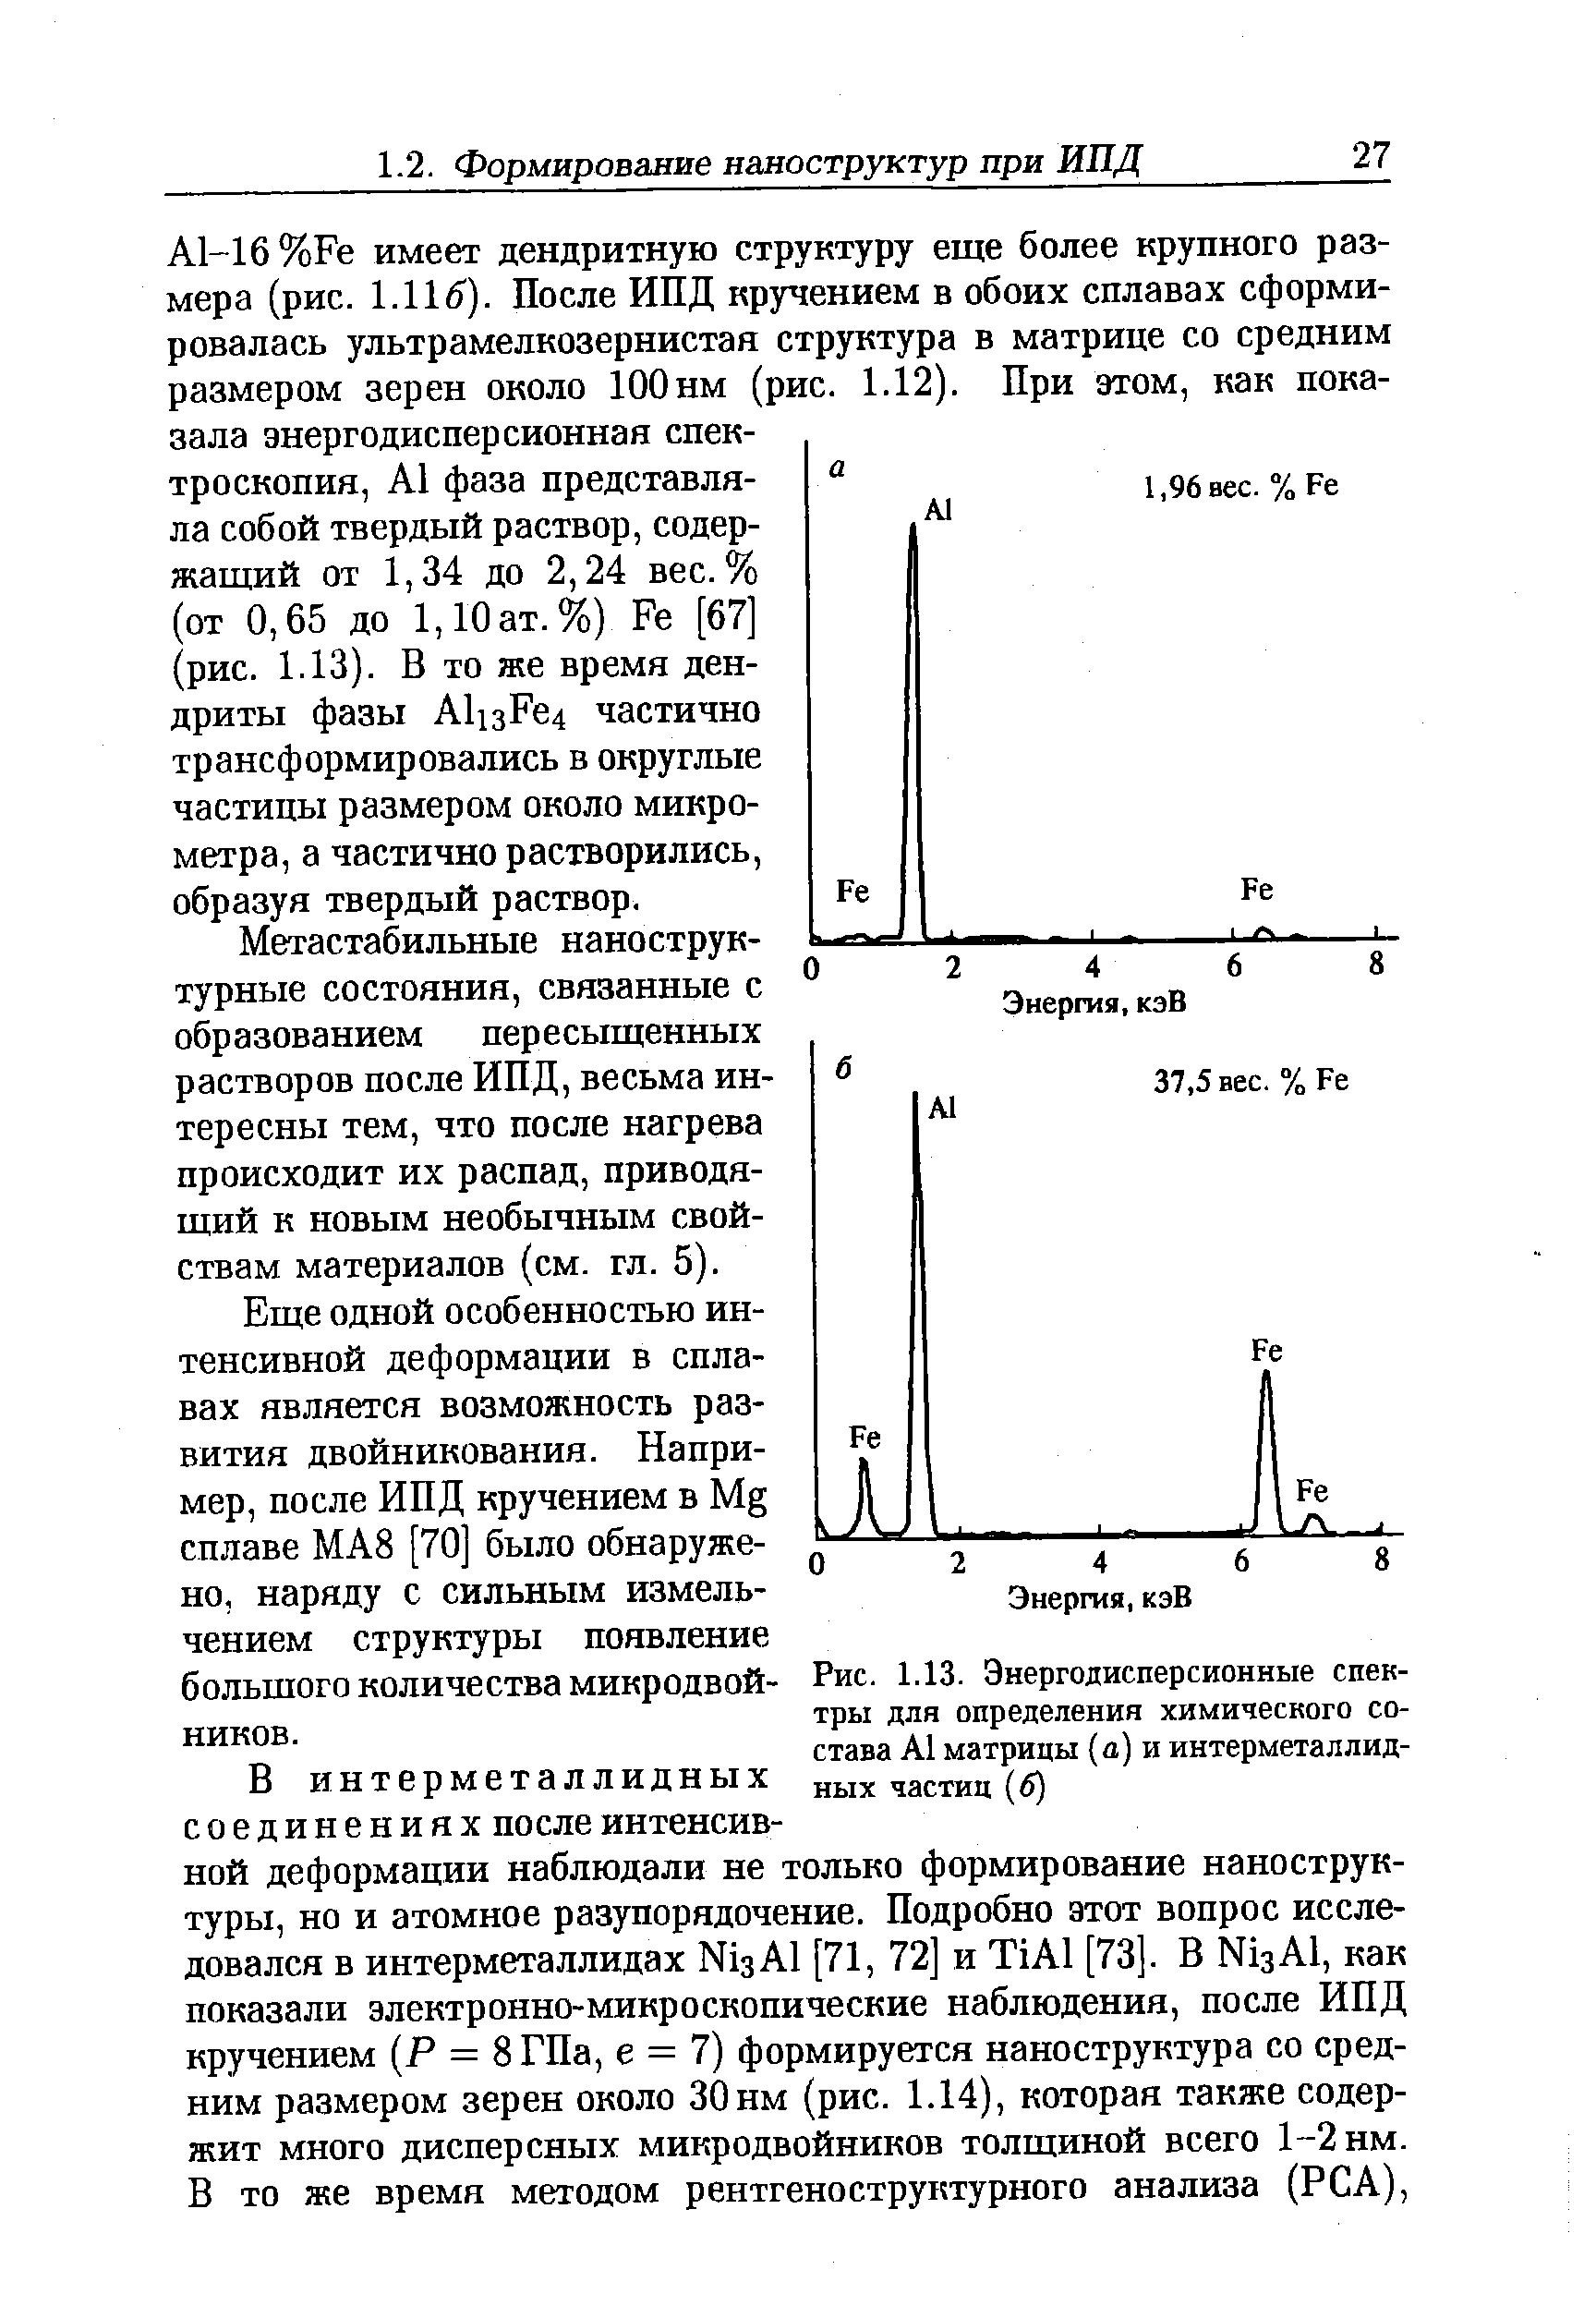 Рис. 1.13. Энергодисперсионные спектры для определения химического состава А1 матрицы (а) и интерметаллидных частиц (б)
